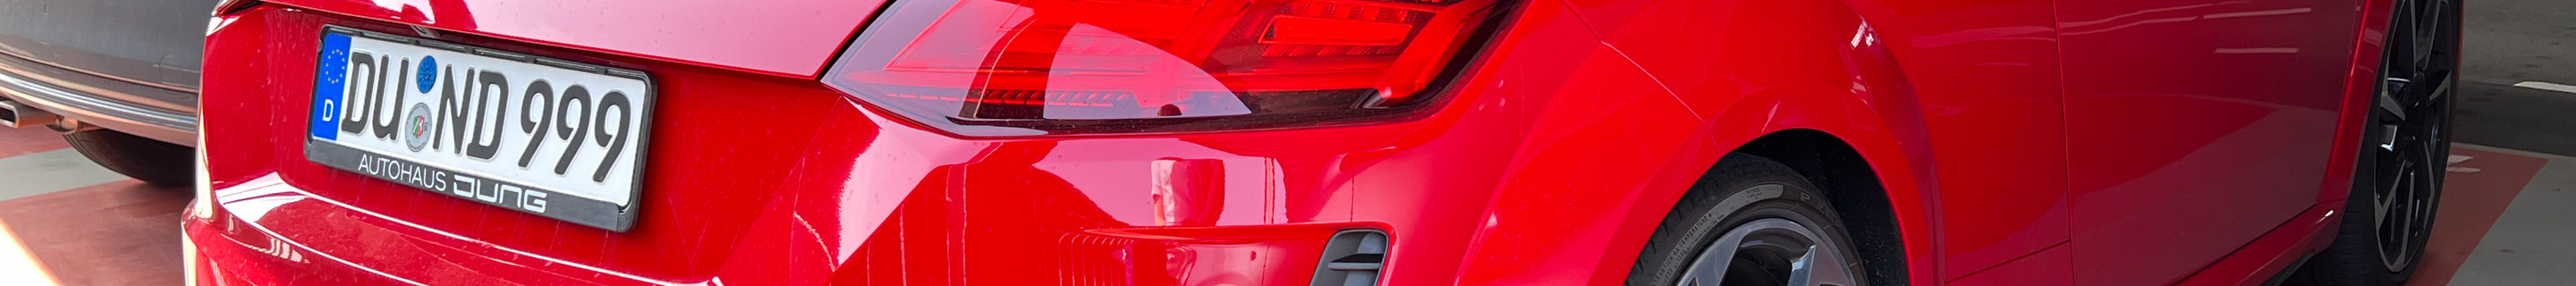 Audi TT-RS 2019